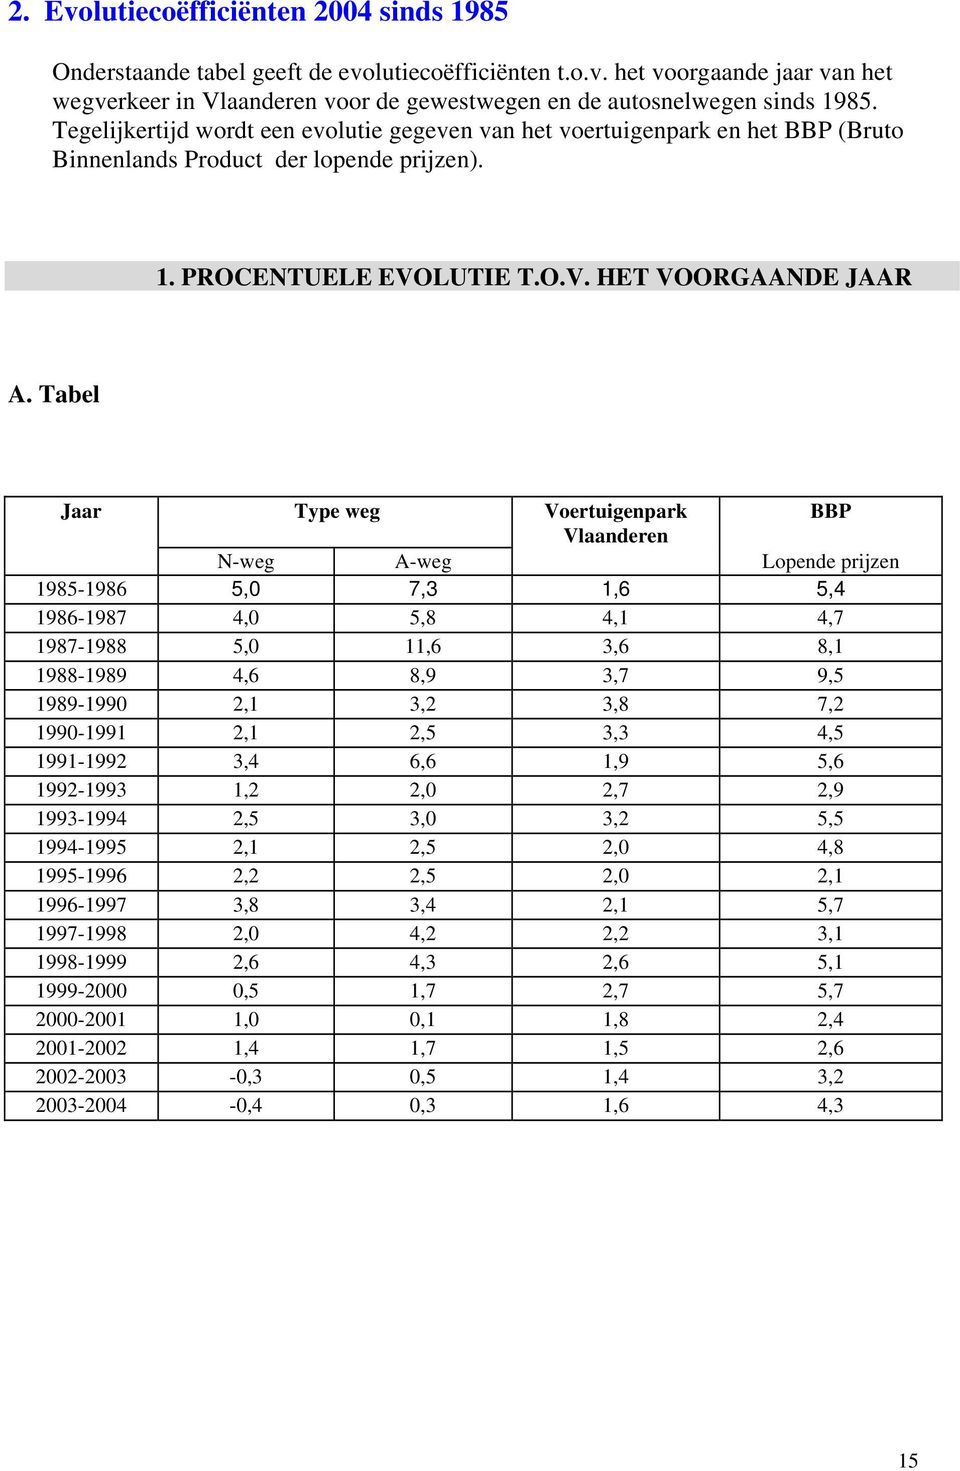 Tabel Jaar Type weg Voertuigenpark BBP Vlaanderen N-weg A-weg Lopende prijzen 1985-1986 5,0 7,3 1,6 5,4 1986-1987 4,0 5,8 4,1 4,7 1987-1988 5,0 11,6 3,6 8,1 1988-1989 4,6 8,9 3,7 9,5 1989-1990 2,1